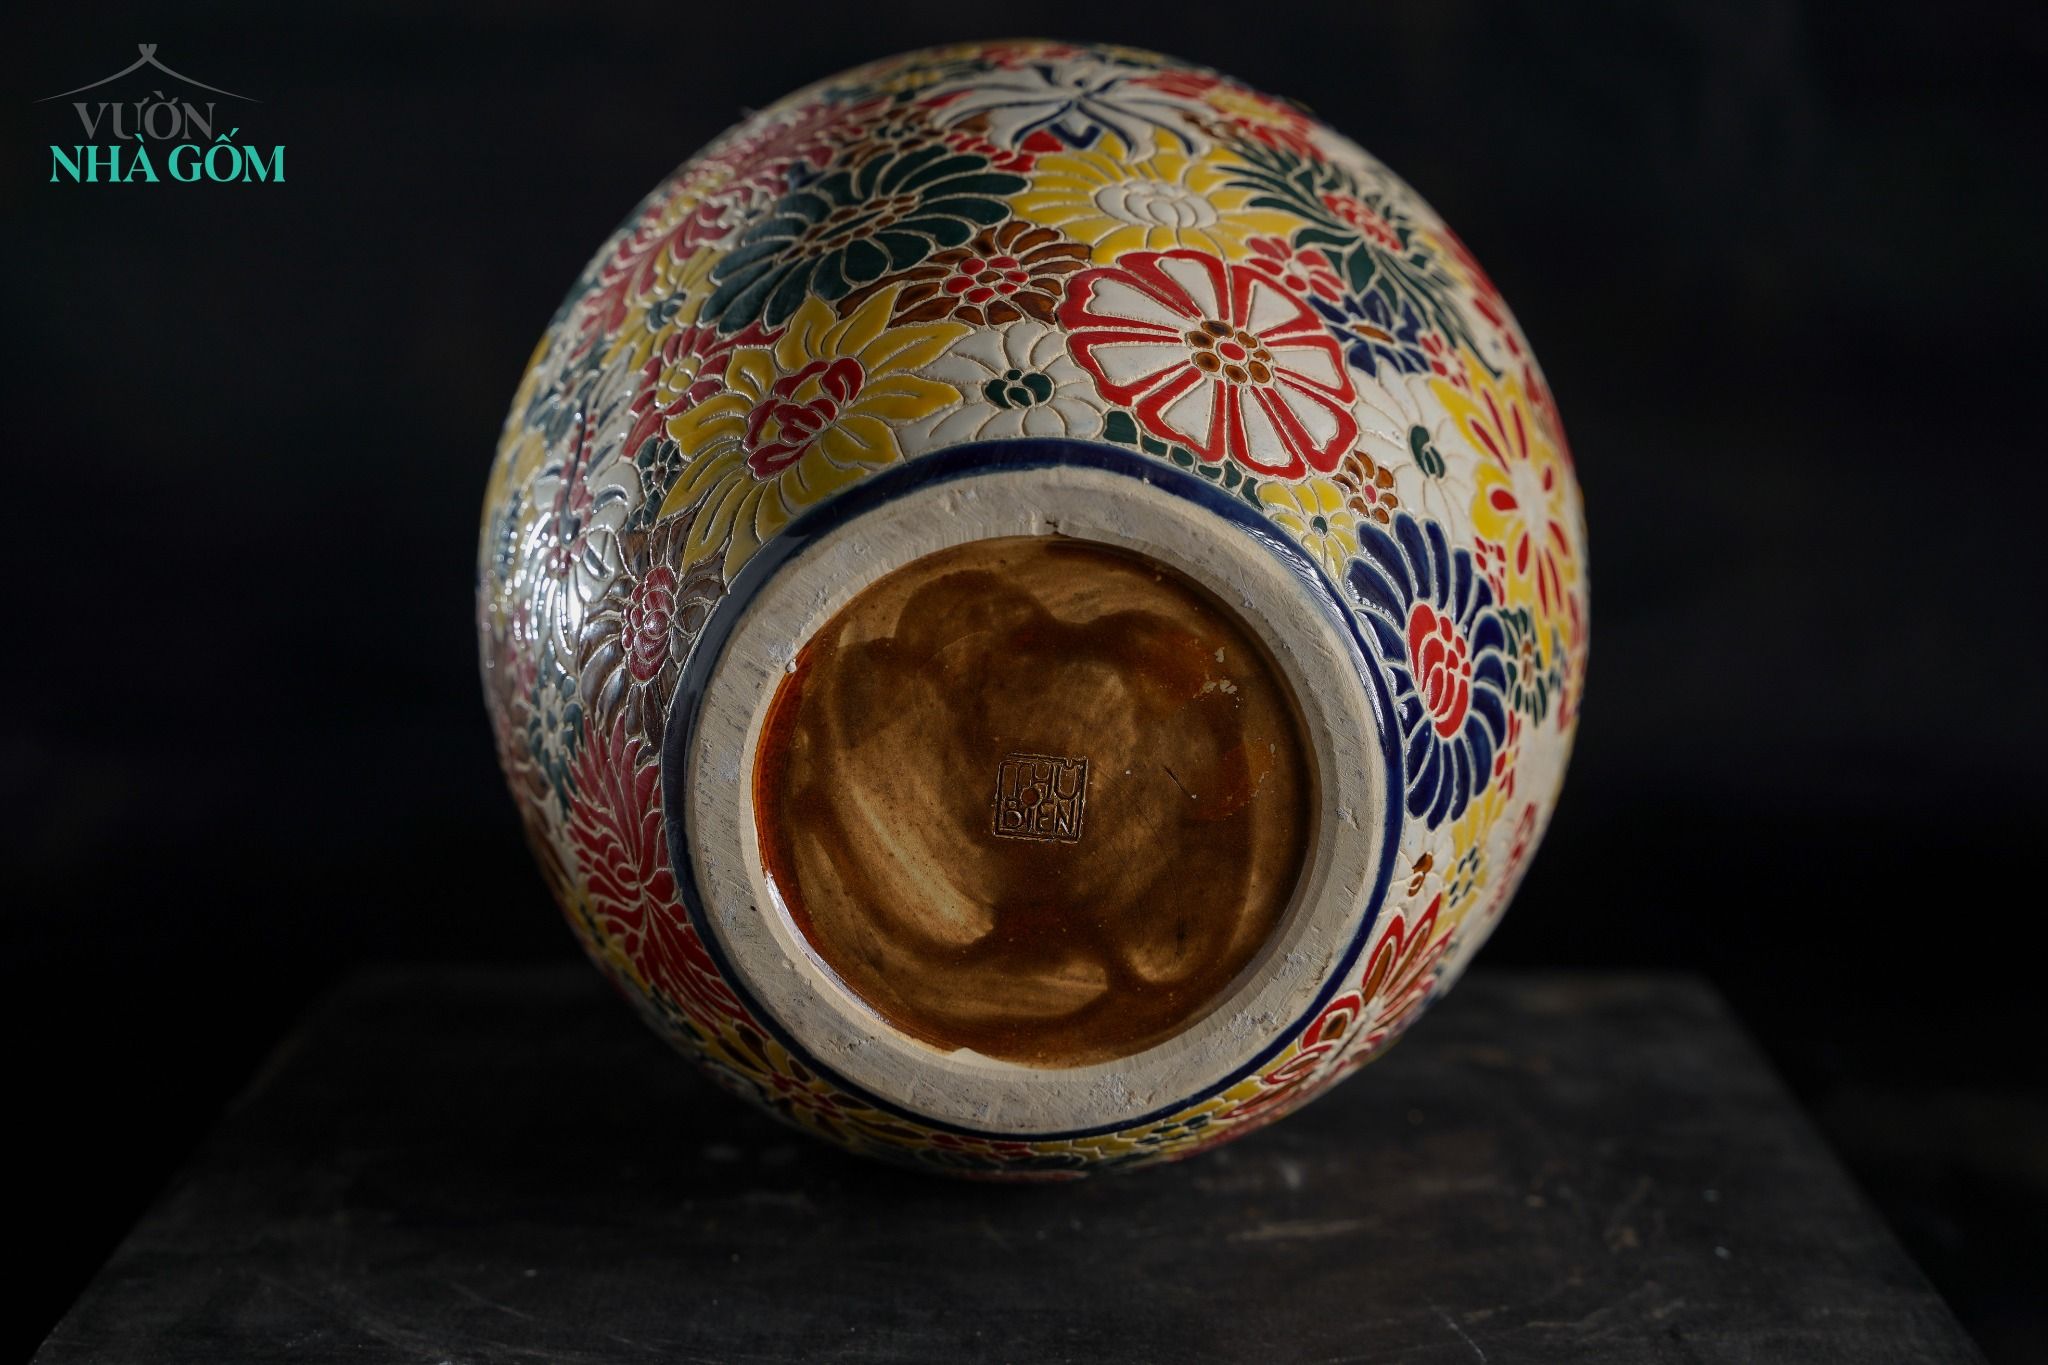  Bình gốm thủ công khắc Bách Hoa rực rỡ, Gốm Thủ Biên, C30 x M10cm 